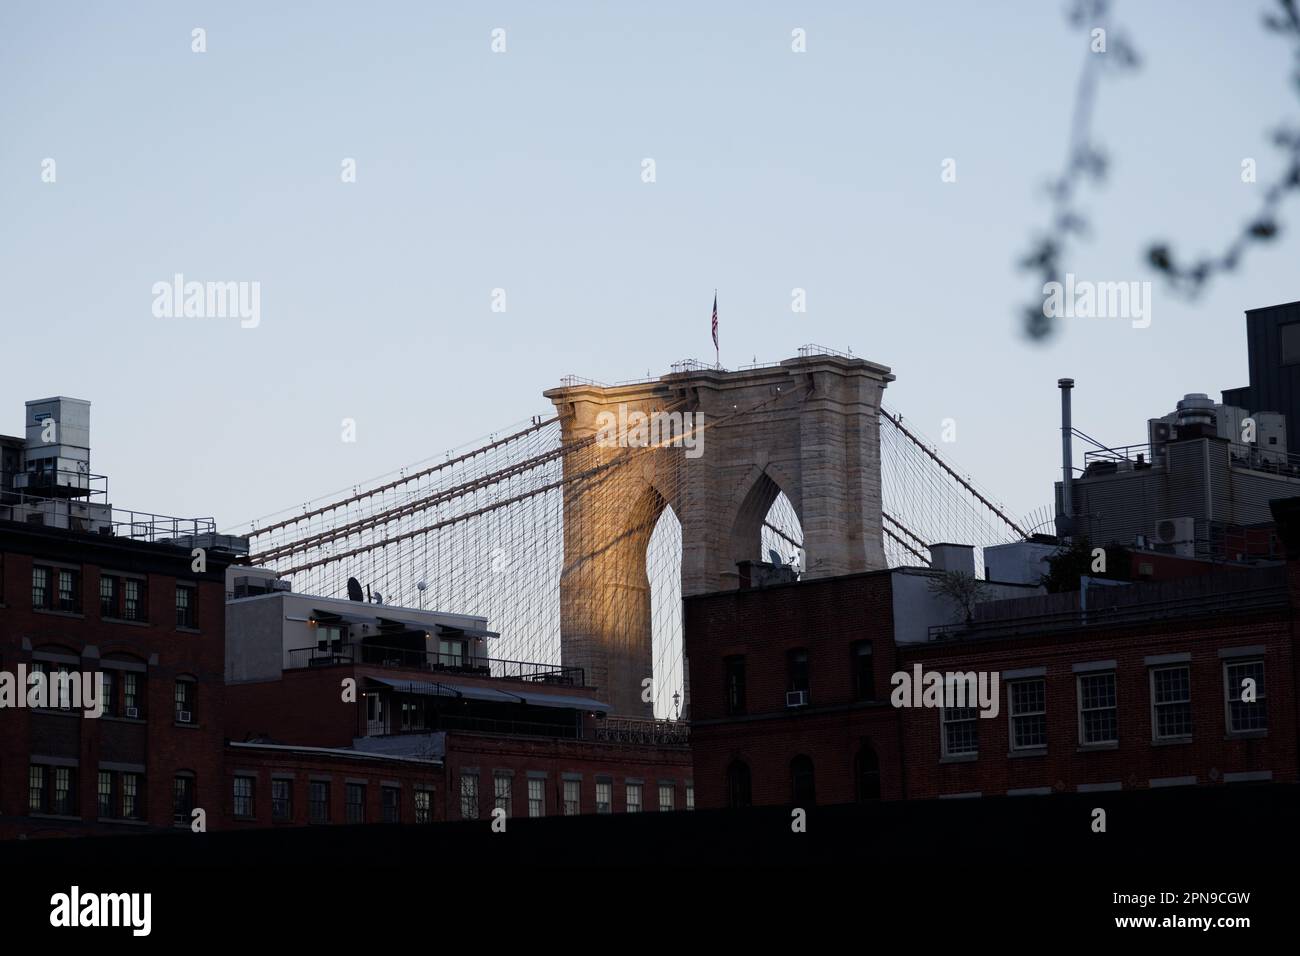 Dernier feu sur le pont de Brooklyn, vu depuis Lower Manhattan, New York. Banque D'Images